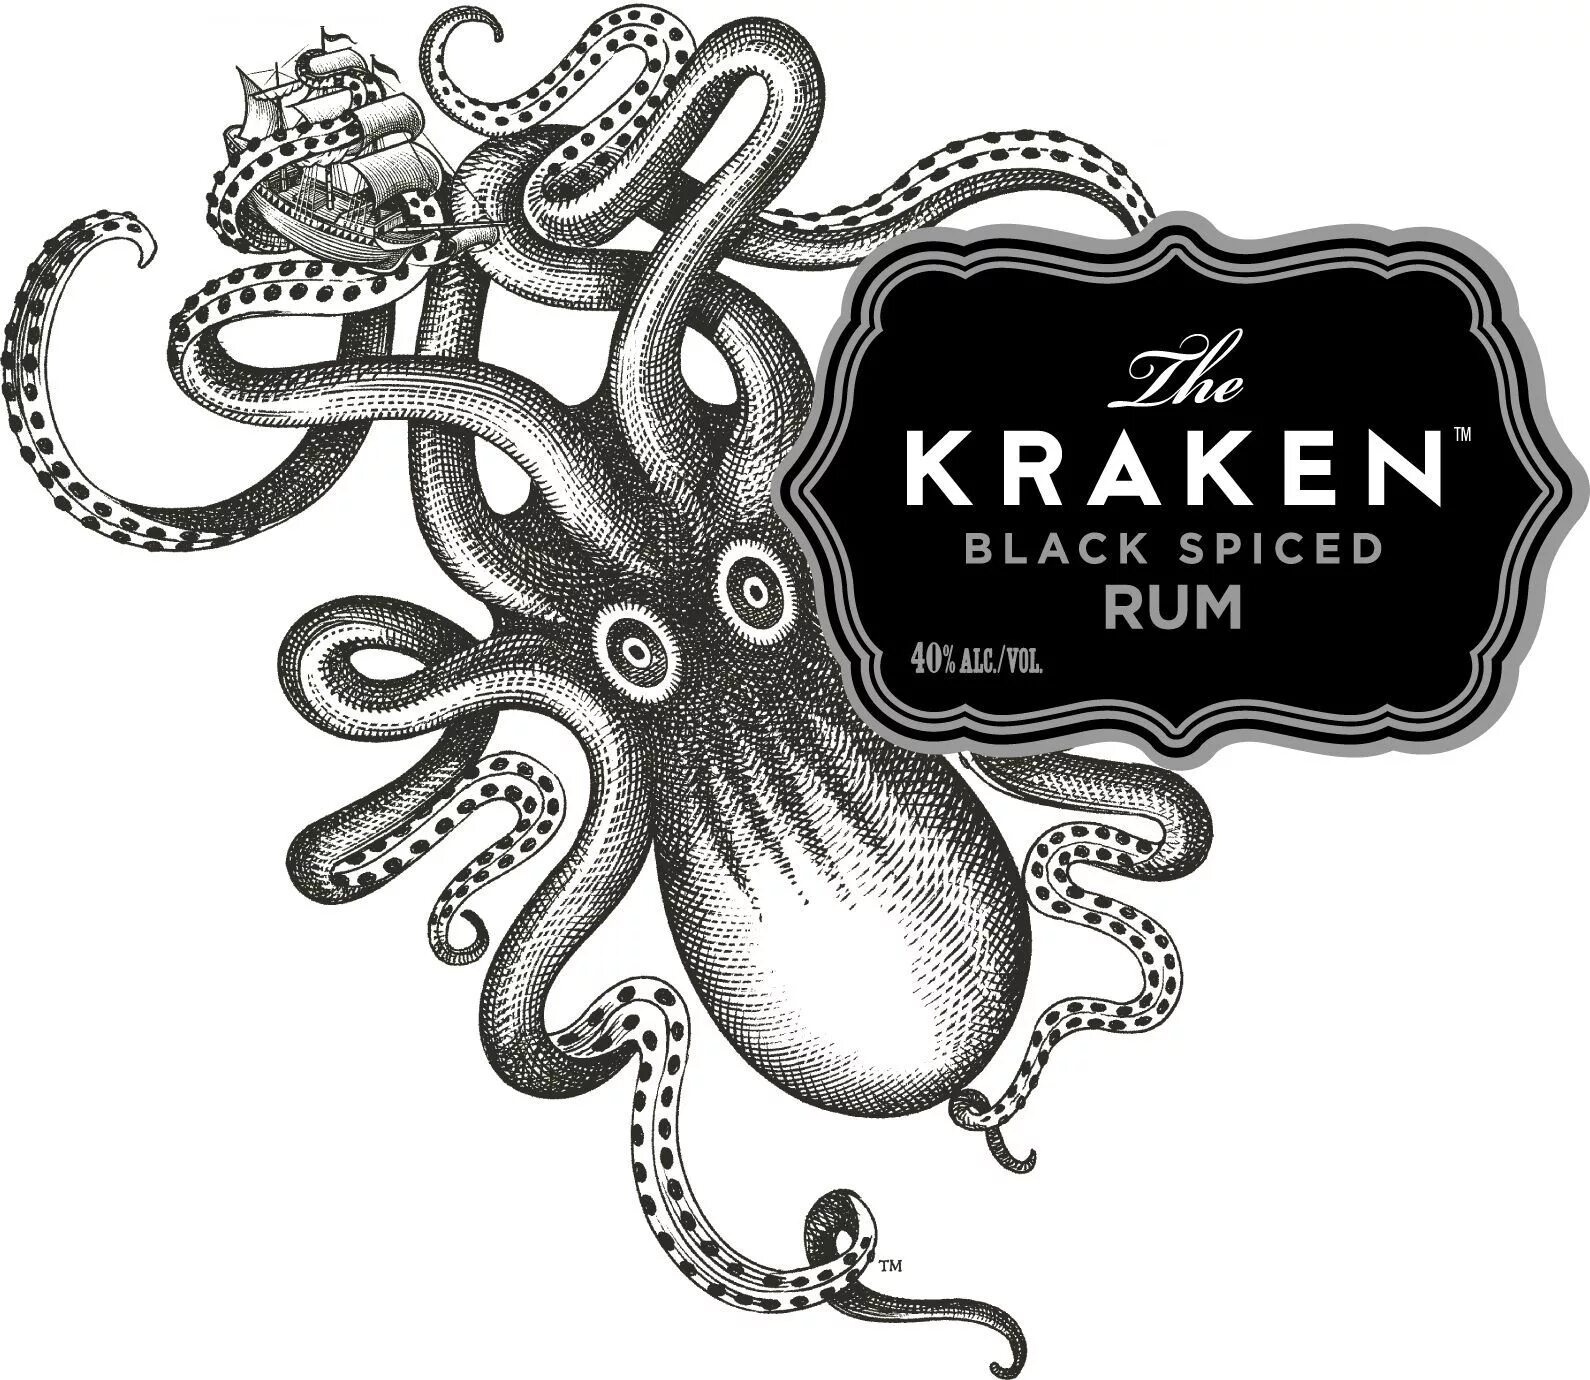 Логотип кракен маркетплейс. Kraken rum этикетка. Ром Kraken Black Spiced. Кракен логотип. Ром с осьминогом на бутылке.